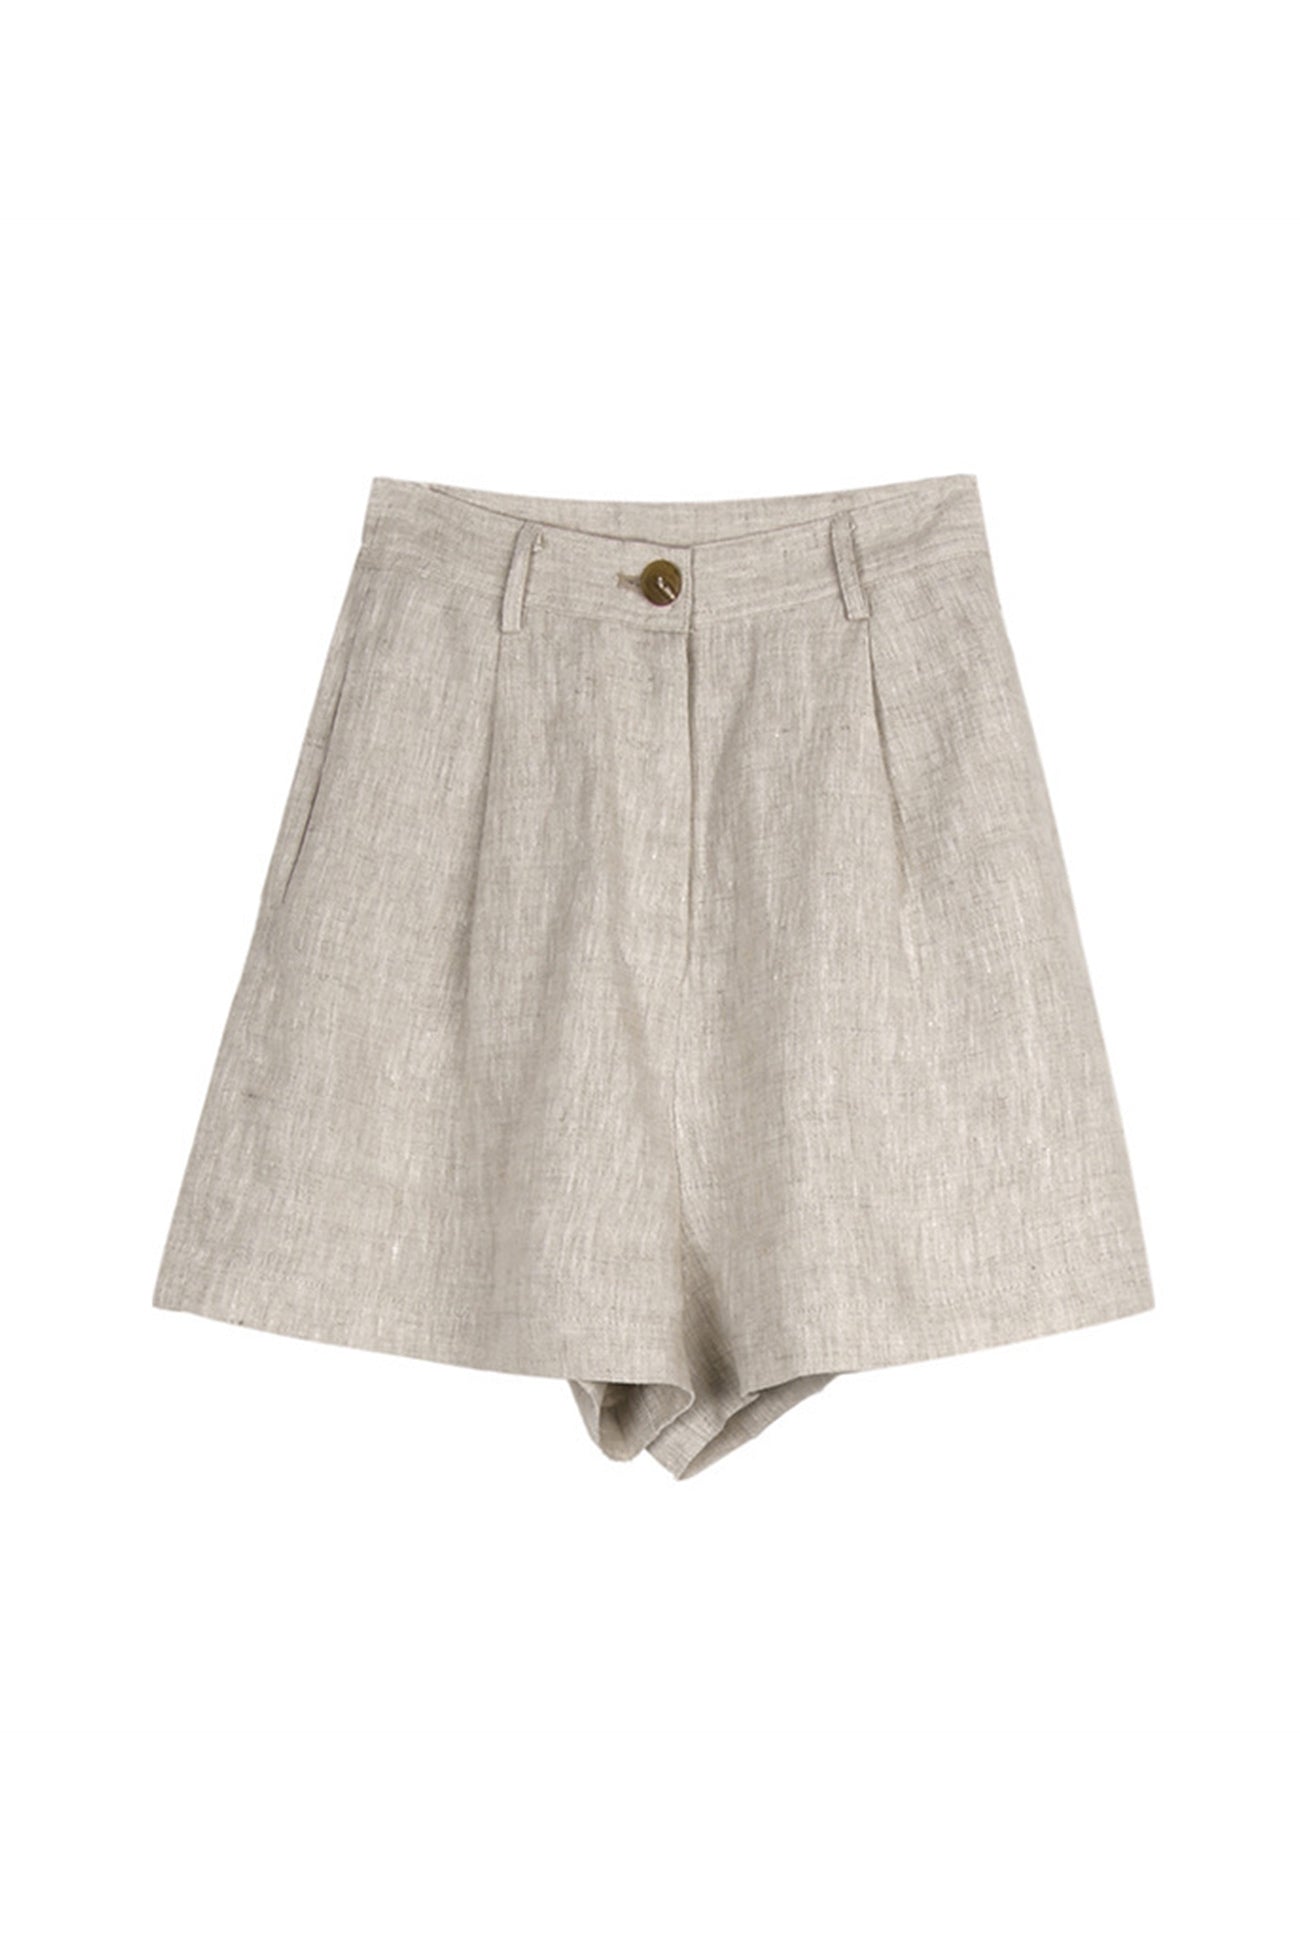 Solid Linen High Waist Shorts